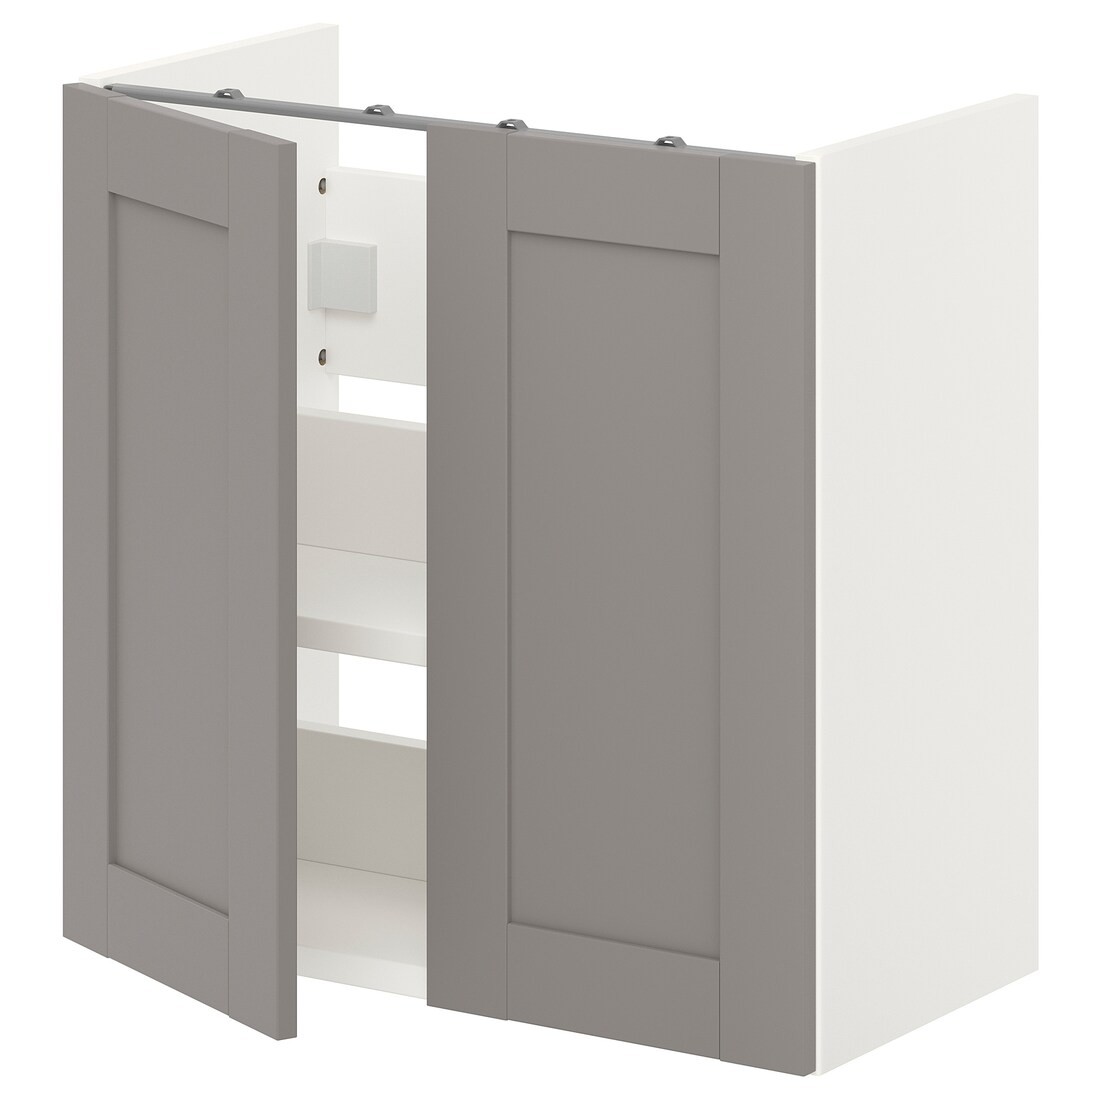 IKEA ENHET ЭНХЕТ Шкаф под умывальник с полкой и дверью, белый / серая рамка, 60x32x60 см 59323649 593.236.49